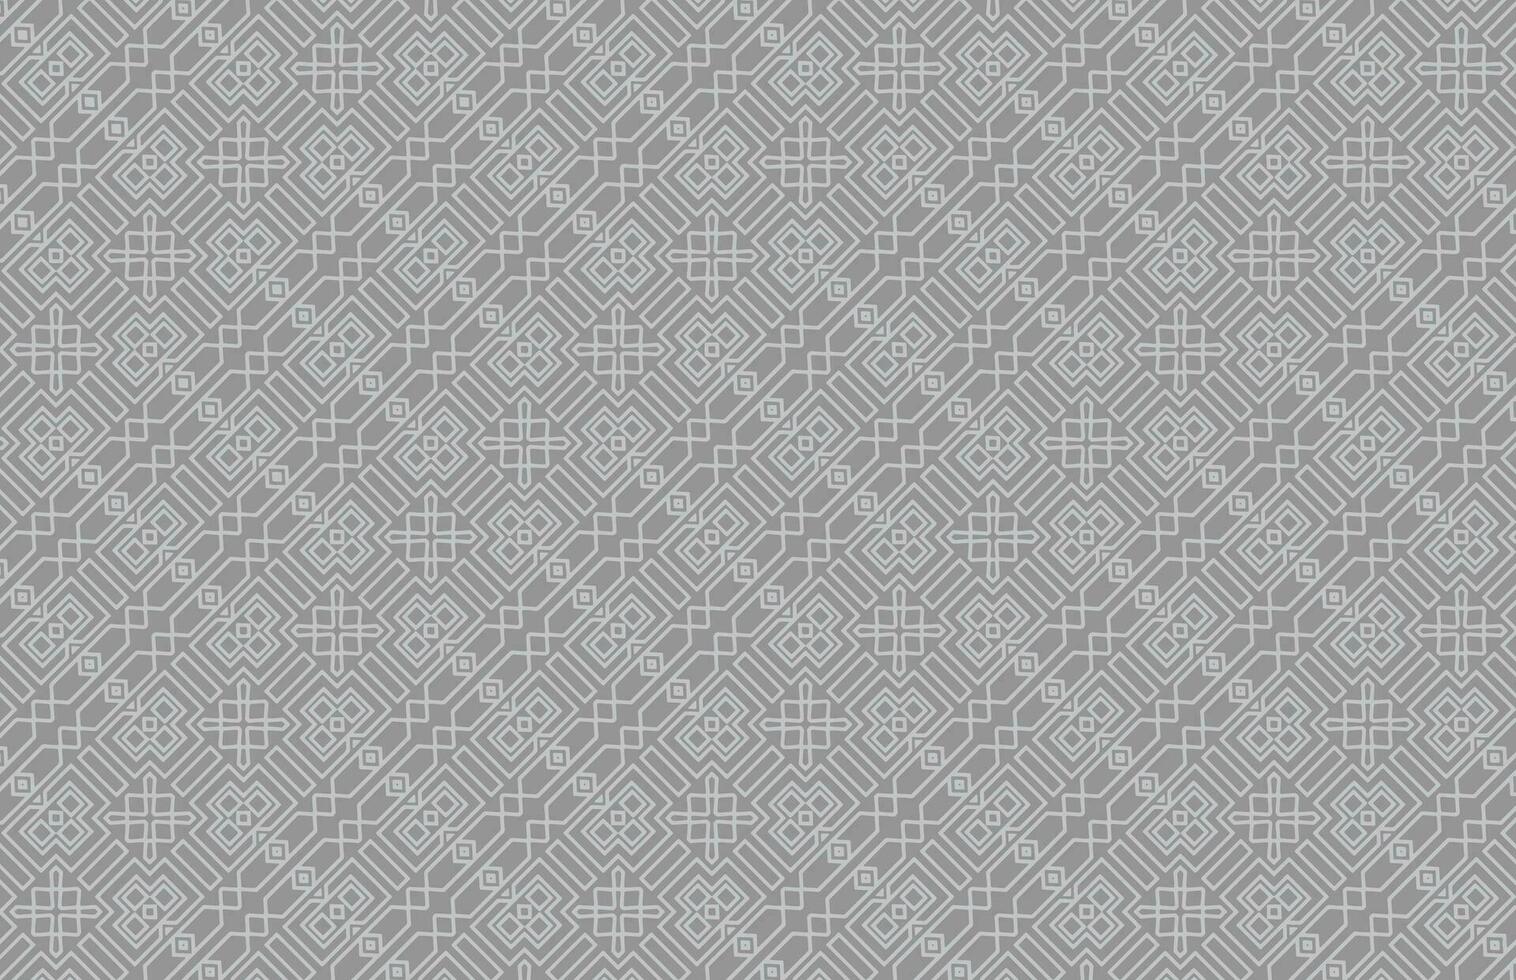 grå Färg geometrisk Ränder design mönster vektor